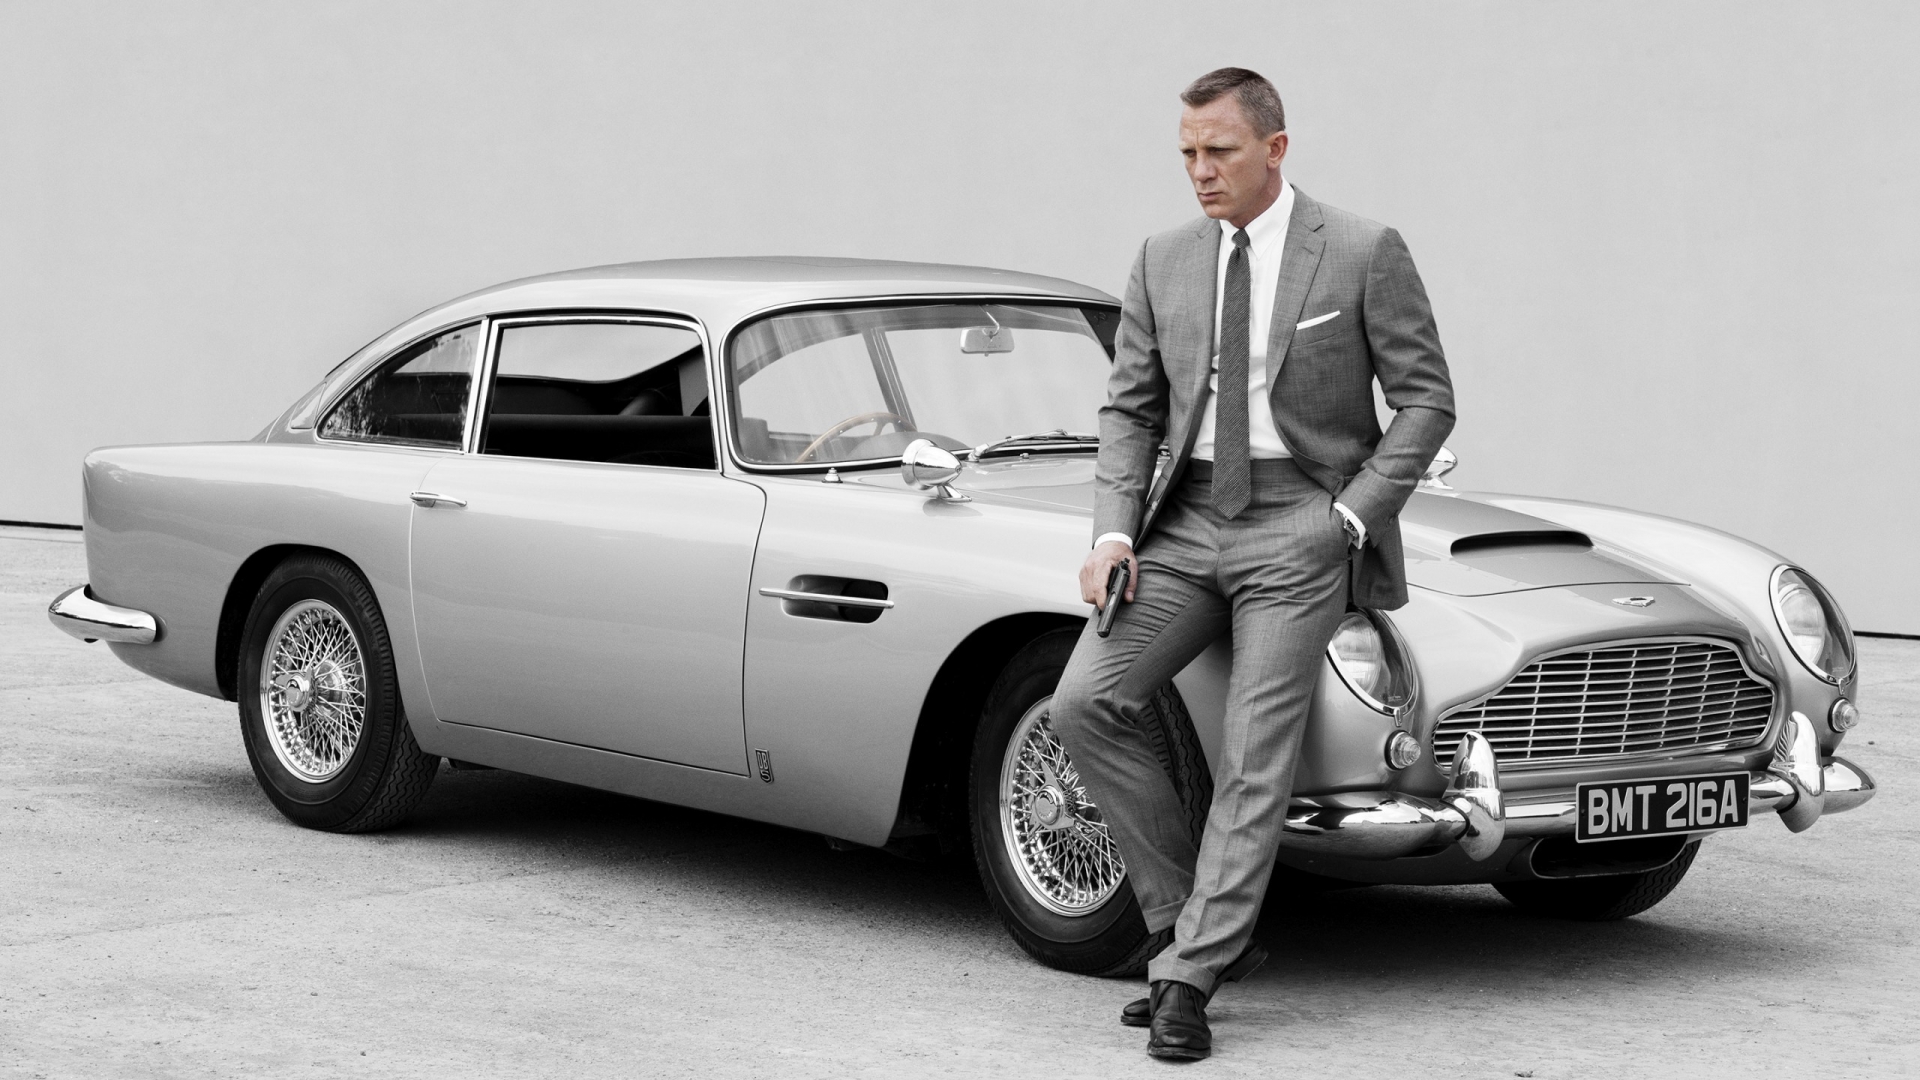 James Bond Skyfall 007 for 1920 x 1080 HDTV 1080p resolution